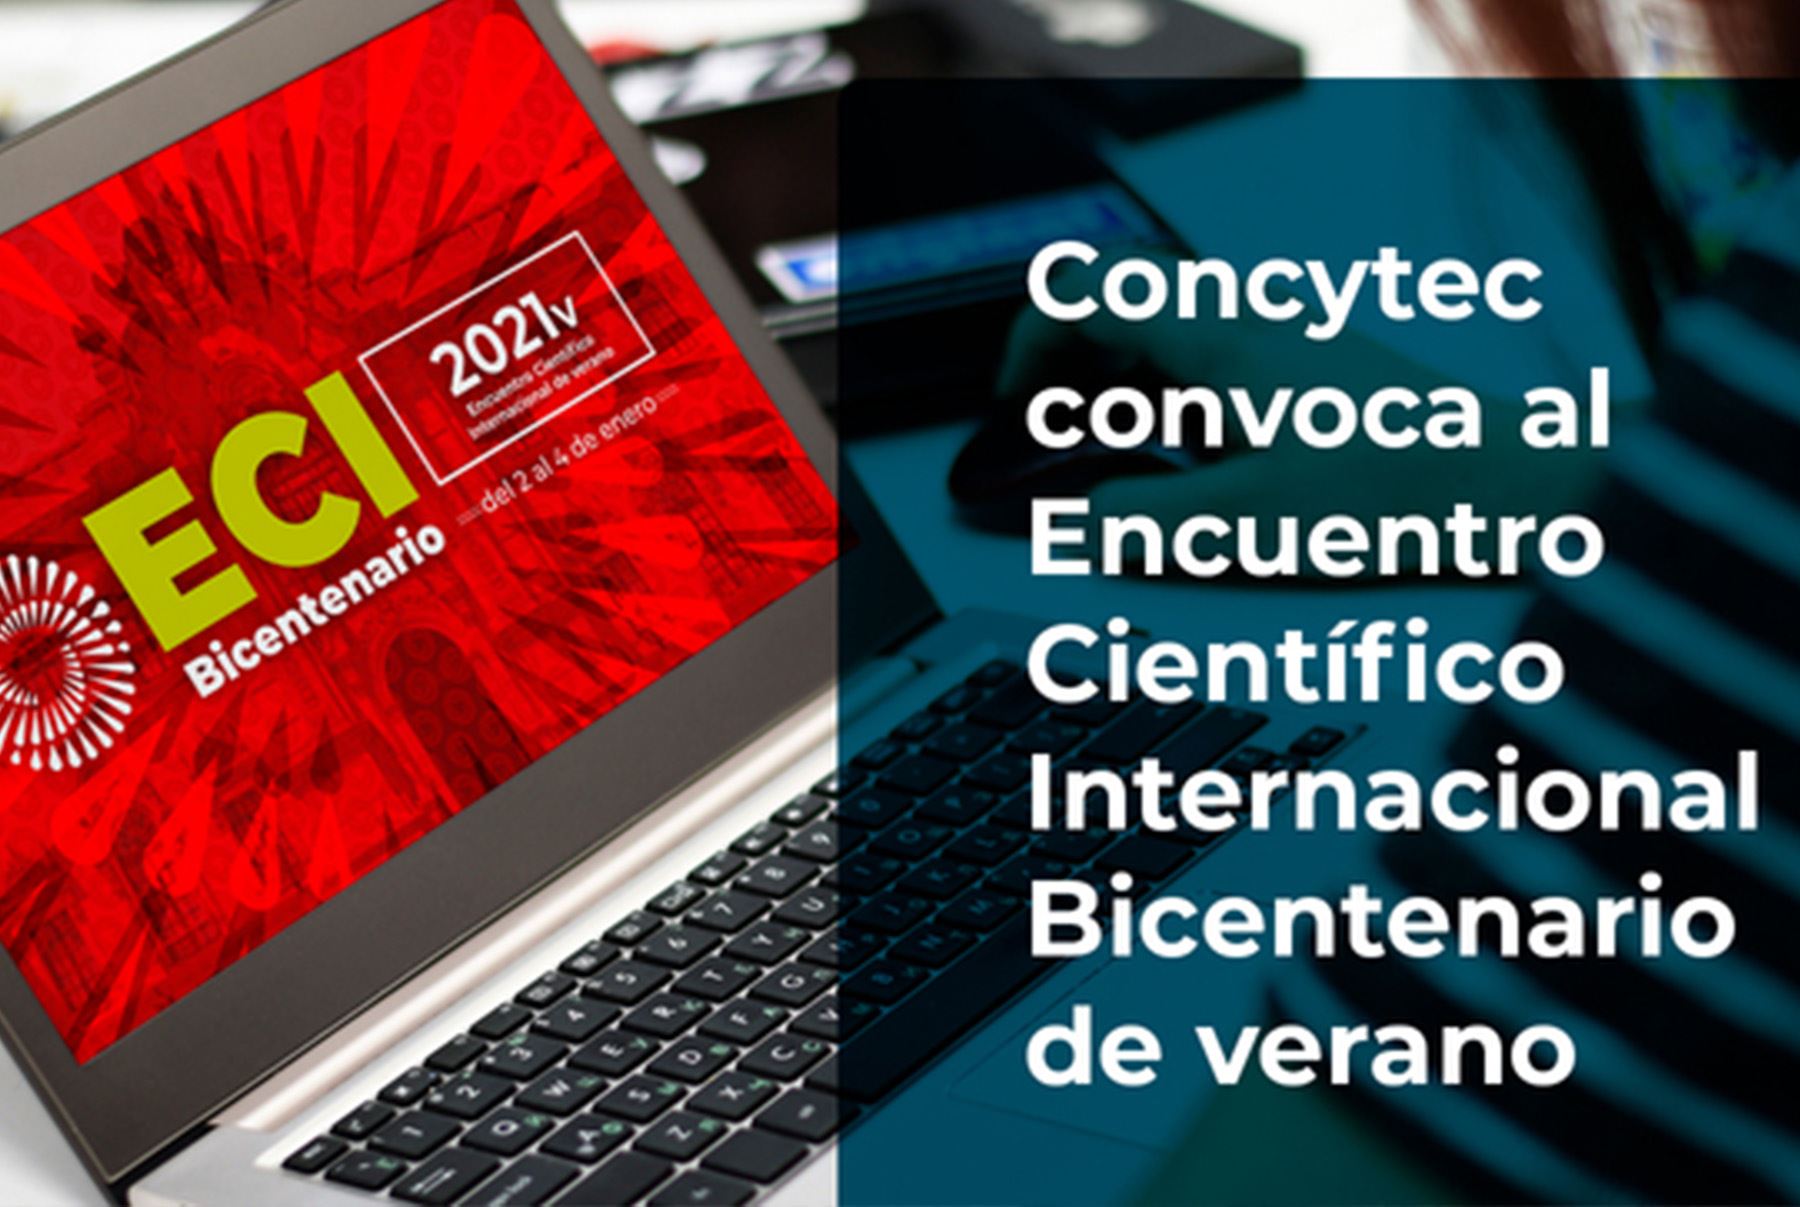 Encuentro Científico Internacional Bicentenario se realizará de manera virtual del 2 al 4 de enero de 2021